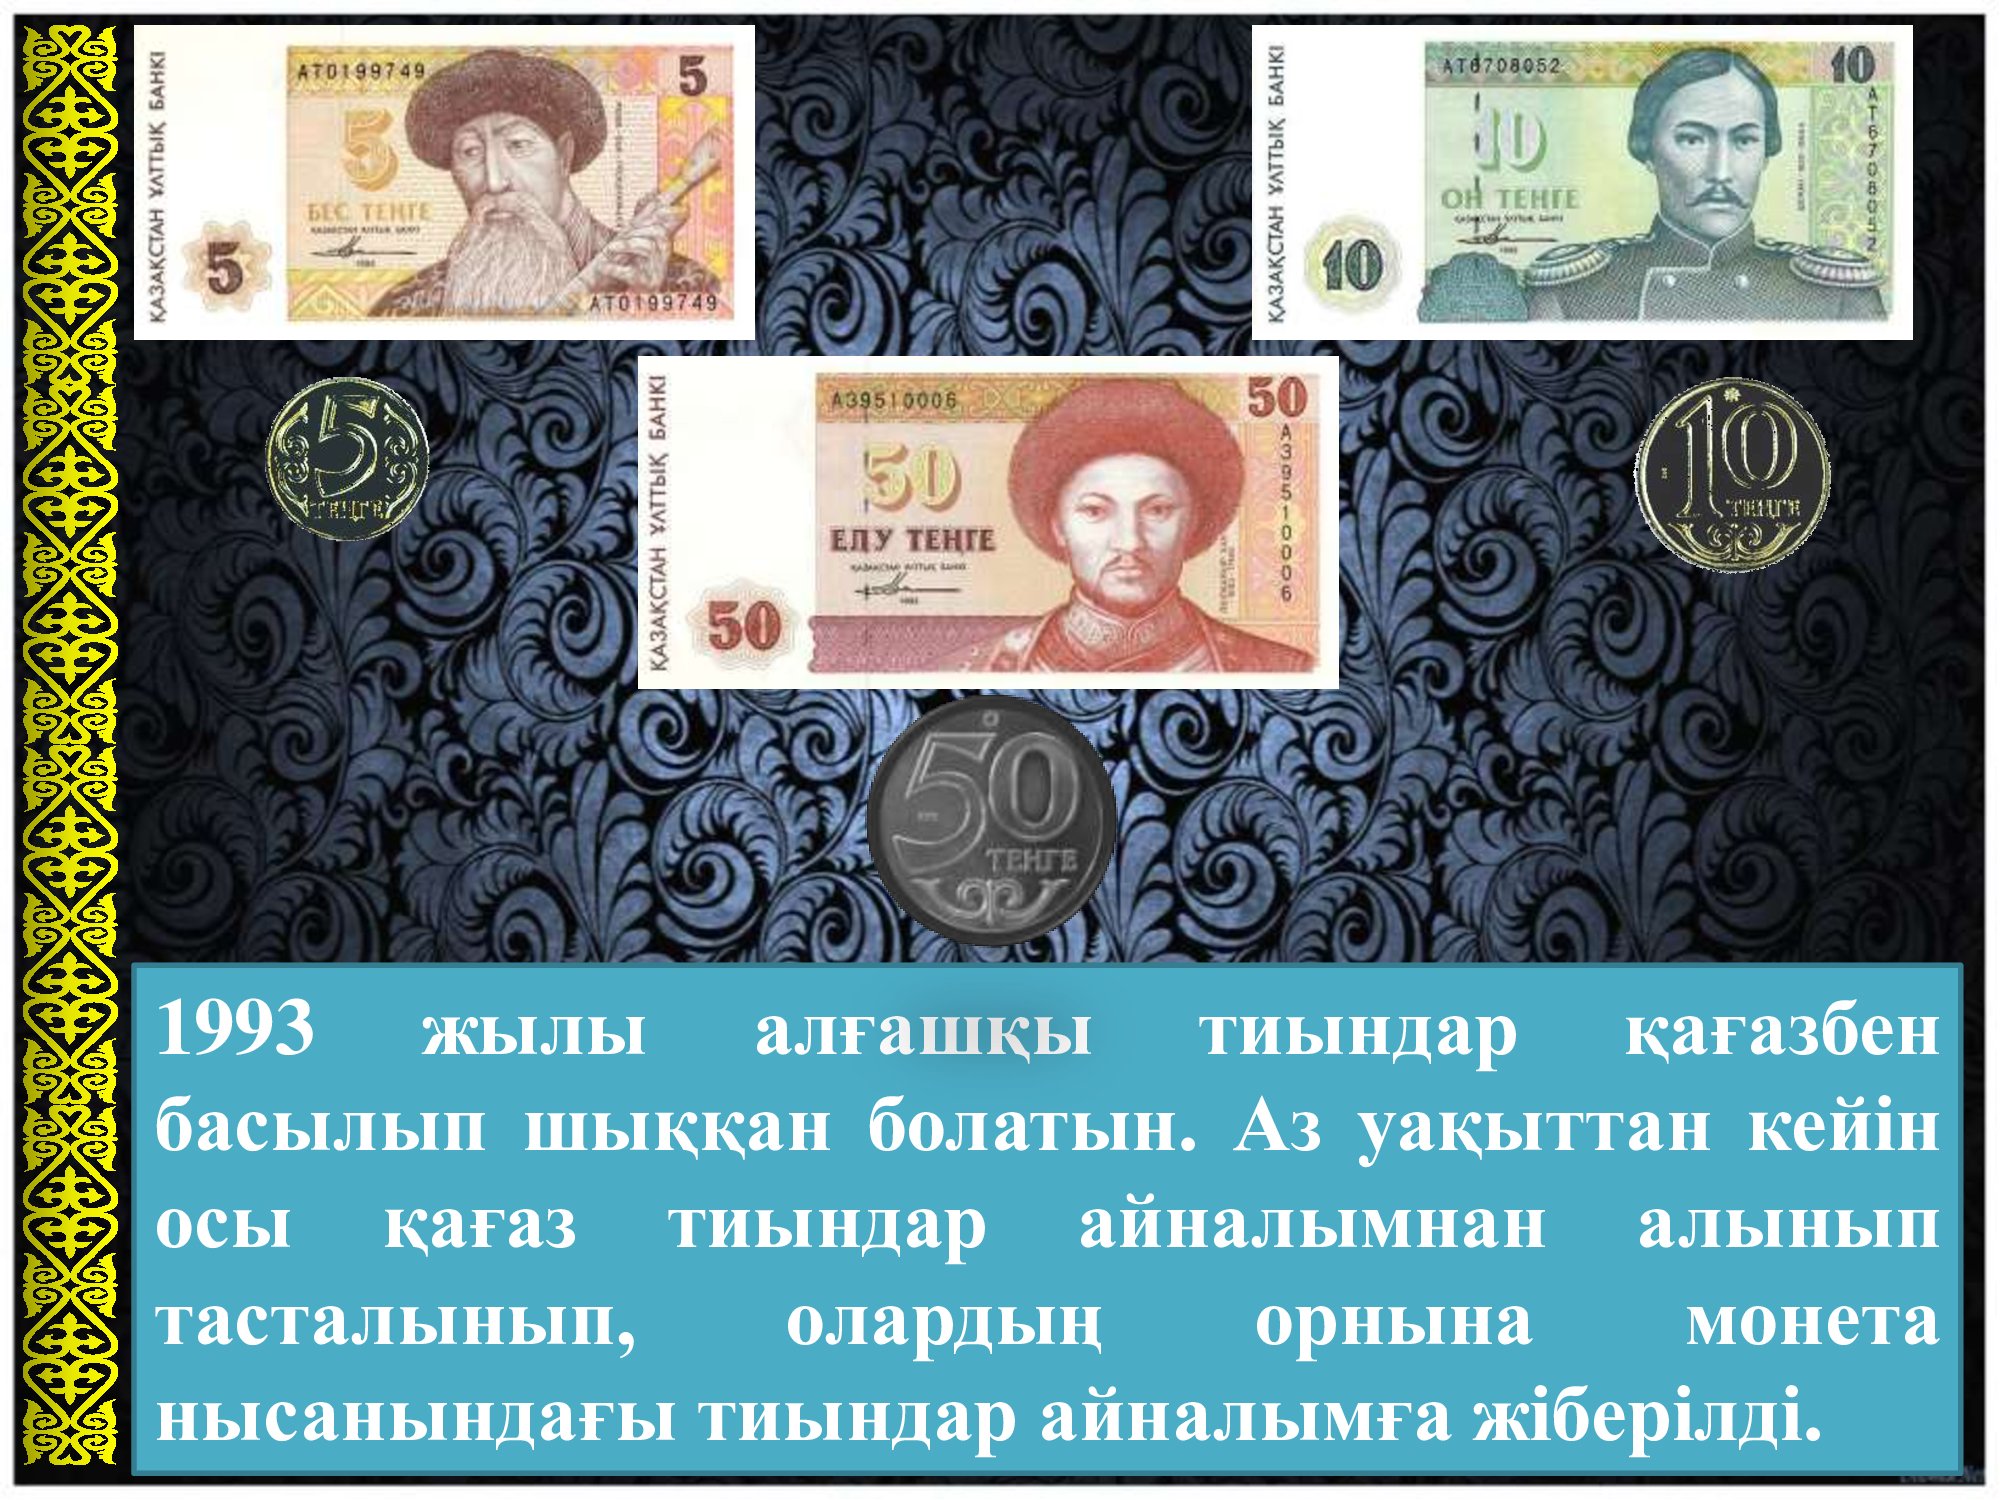 Тенге валюта казахстана рубль. 5 Бес тенге 1993. 1993 Жыл. Рдно валюта тг.